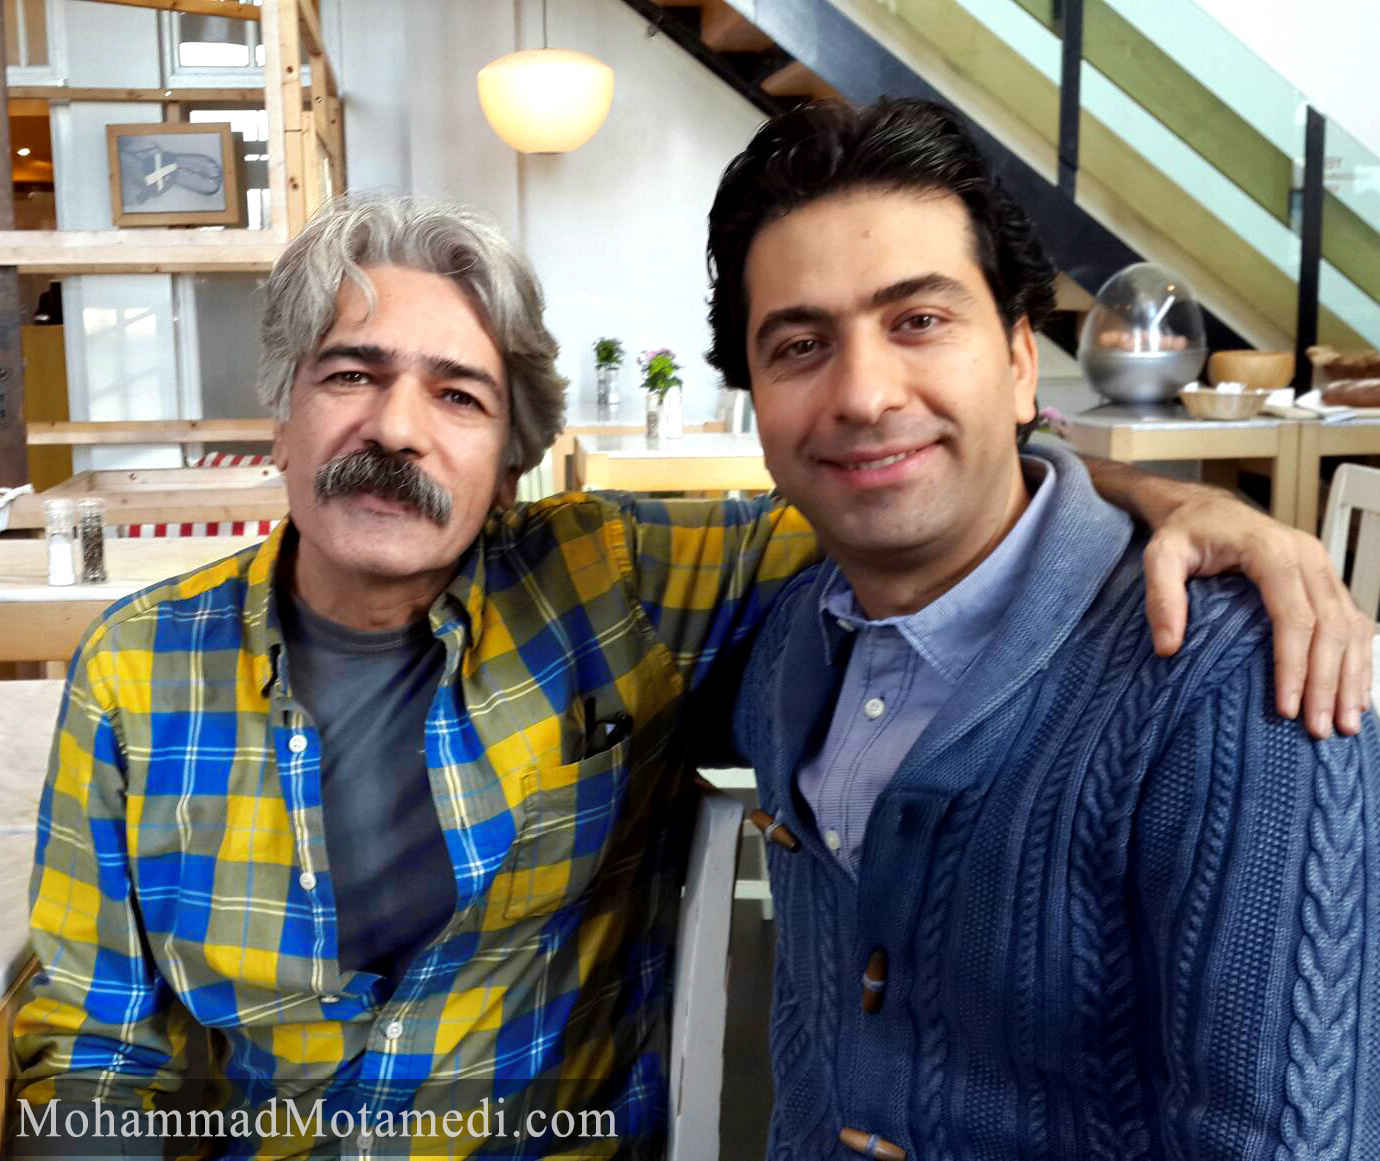 محمد معتمدی و استاد کیهان کلهر ، آمستردام 31 ژانویه 2015